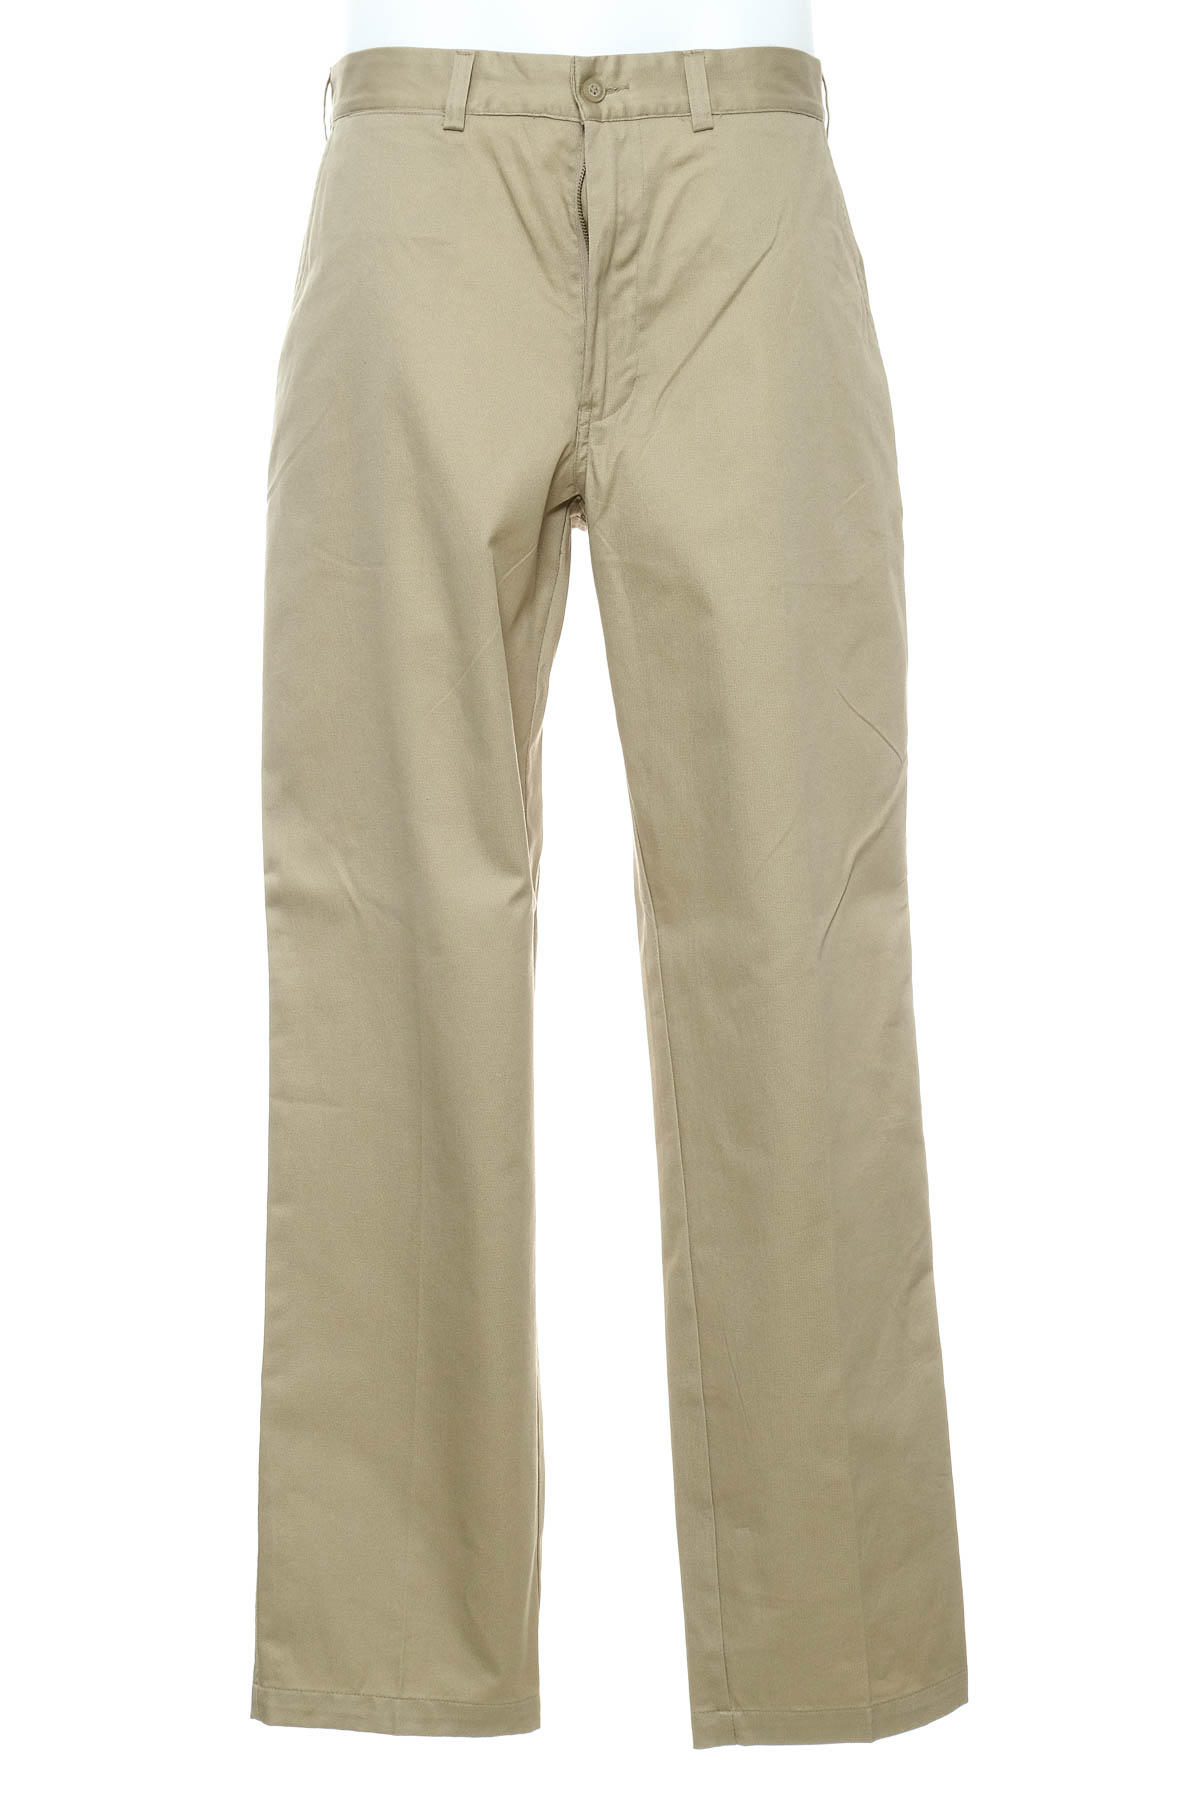 Pantalon pentru bărbați - Port Louis - 0